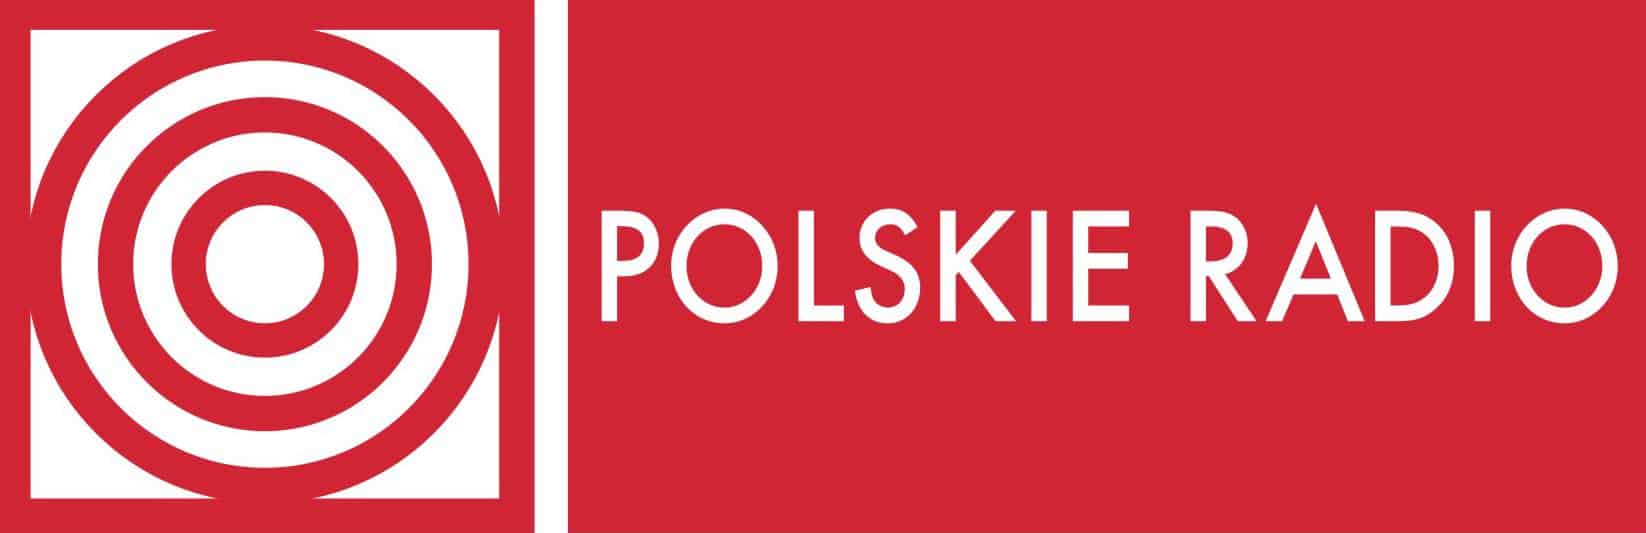 Polskie Radio promuje polską muzykę i kulturę w Chinach